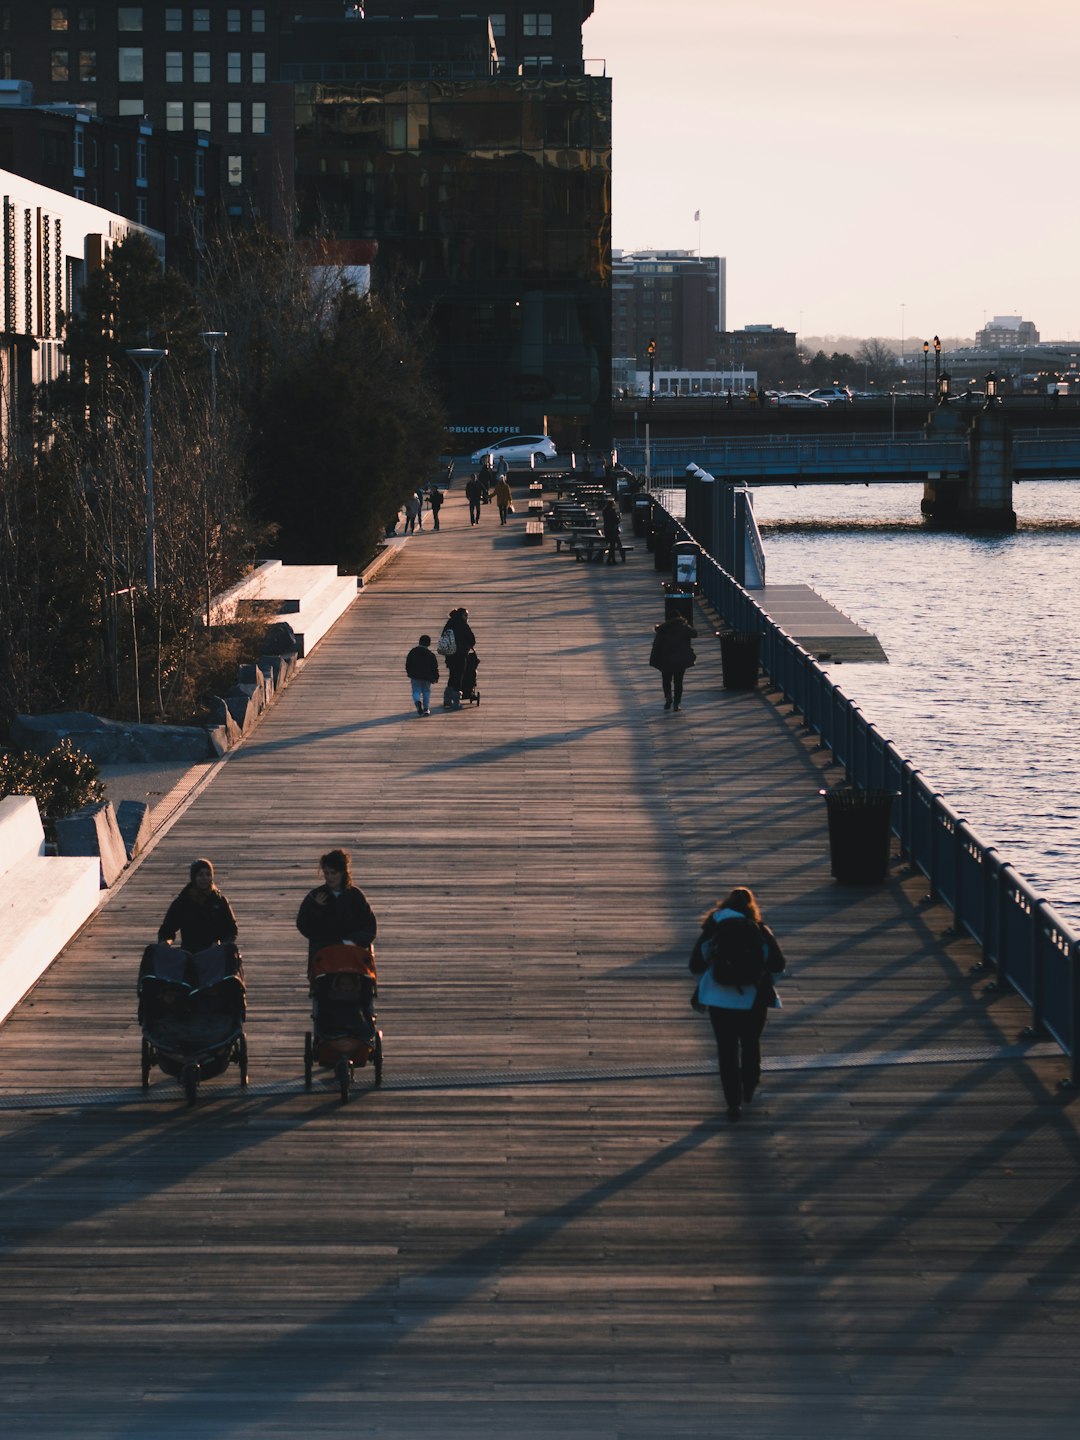 people walking on wooden platform beside body of water